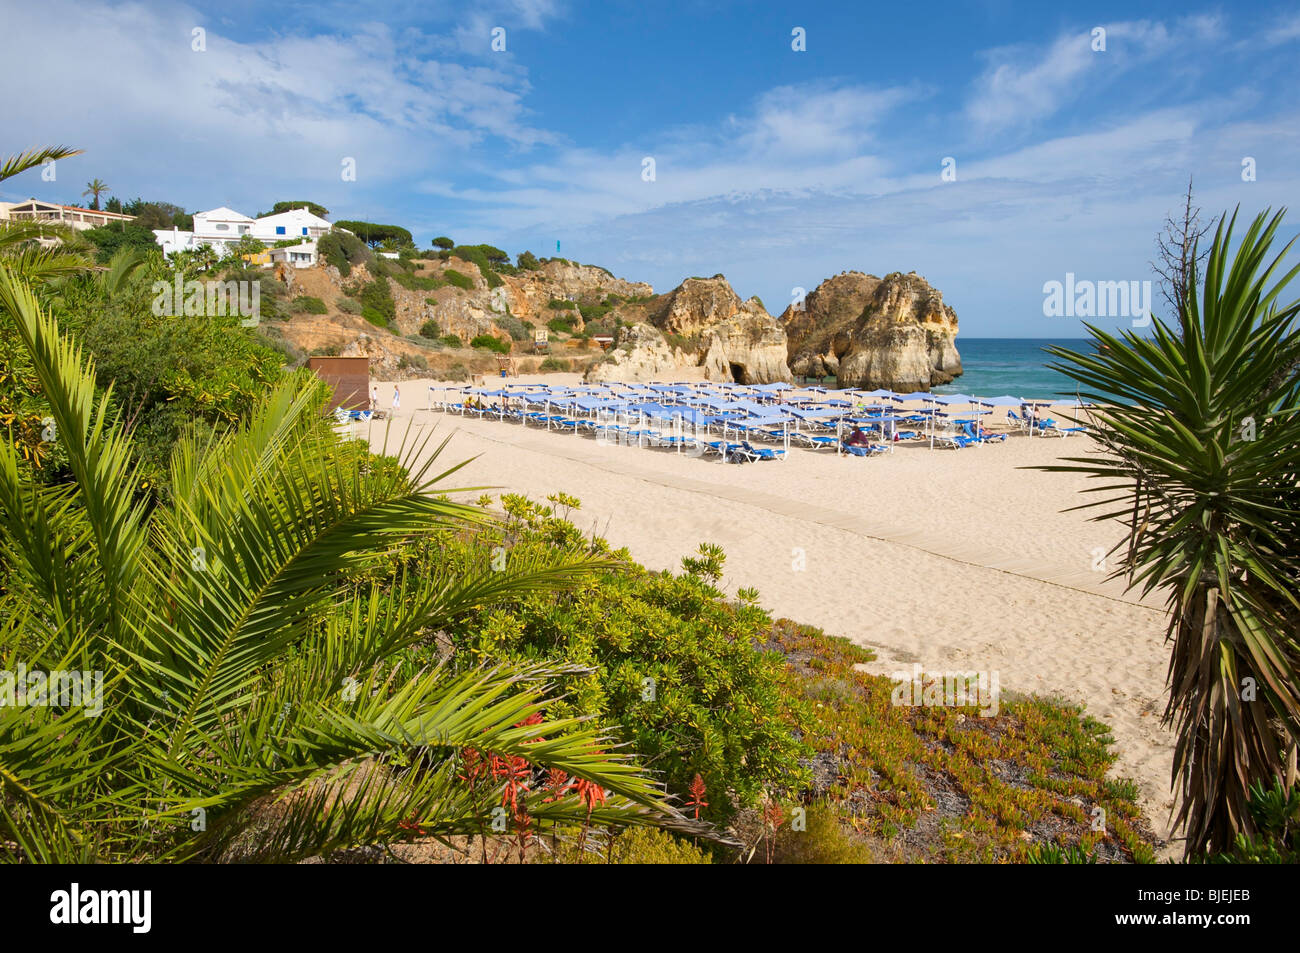 Praia dos Tres Irmaos, Algarve, Portugal Stock Photo